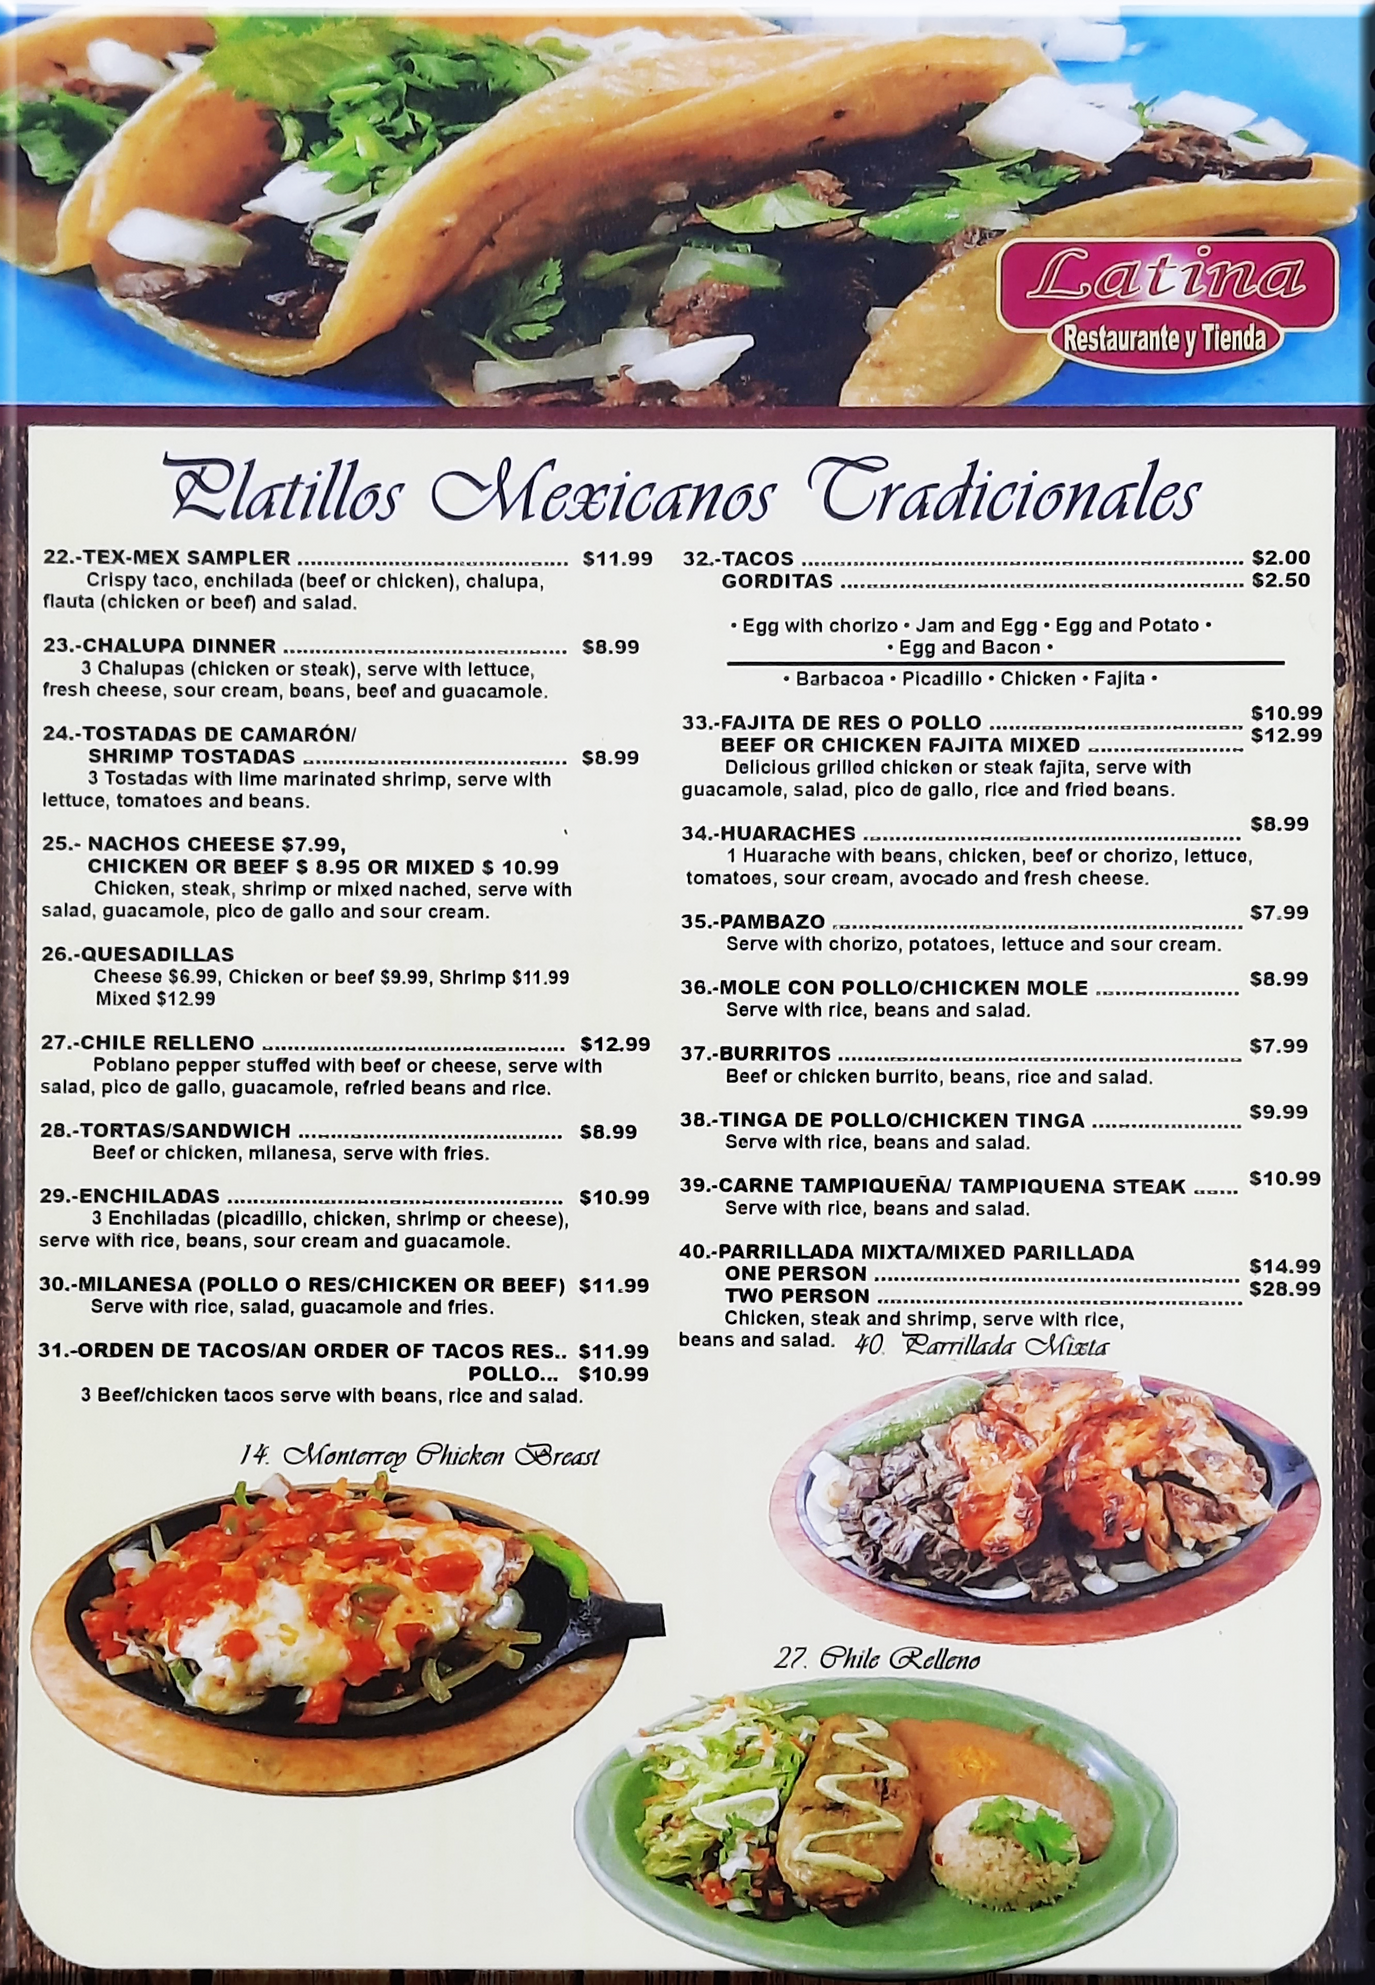 Tradiciones Andinas Salsa Pollo la Brasa 15 oz - Nuestra Tienda Latina